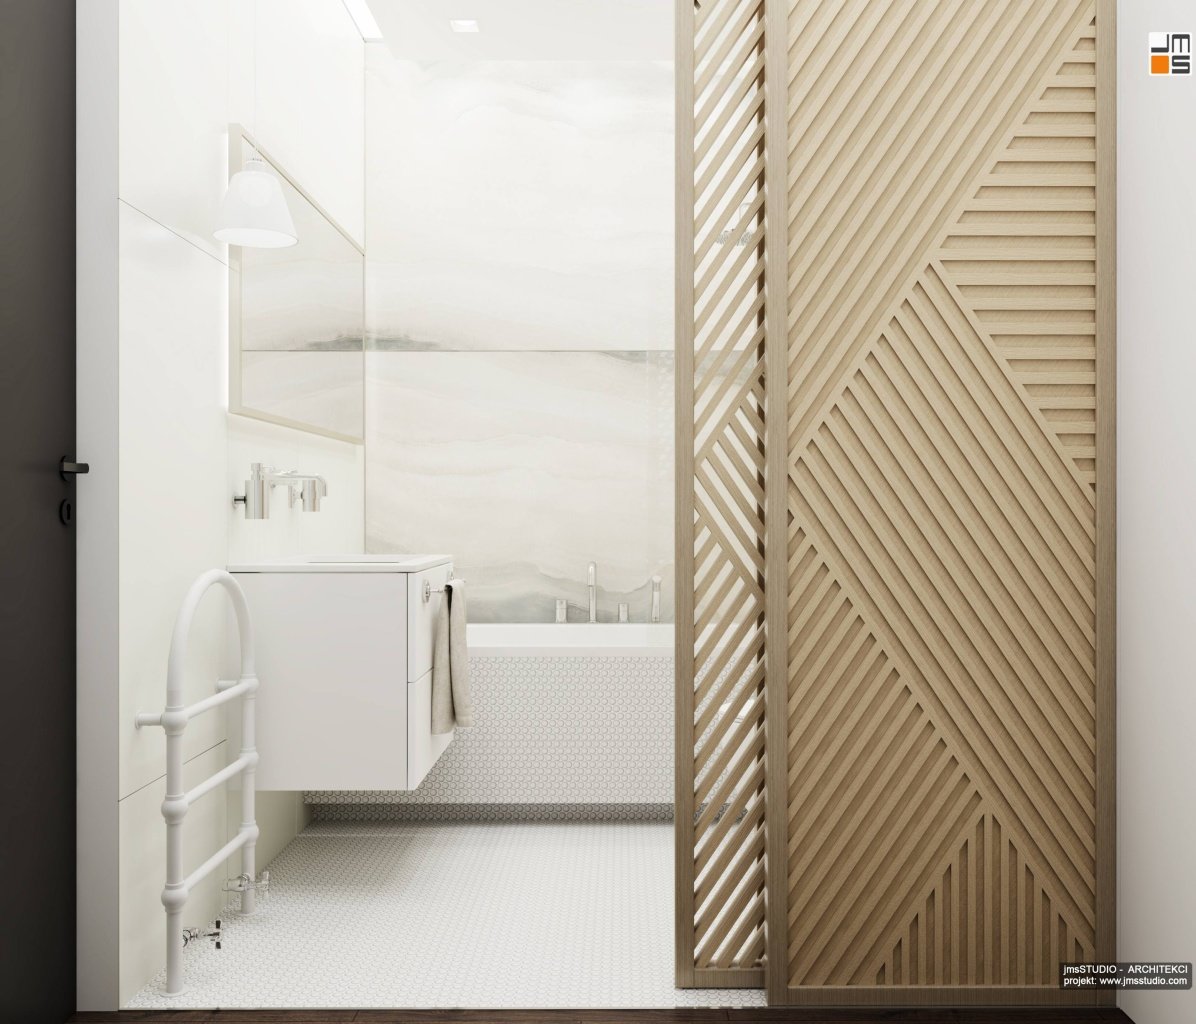 Drewniany składany ażurowy parawan to pomysł na wydzielenie przestrzeni kąpielowej w projekcie wnętrz nowoczesnej łazienki z jasnymi płytkami